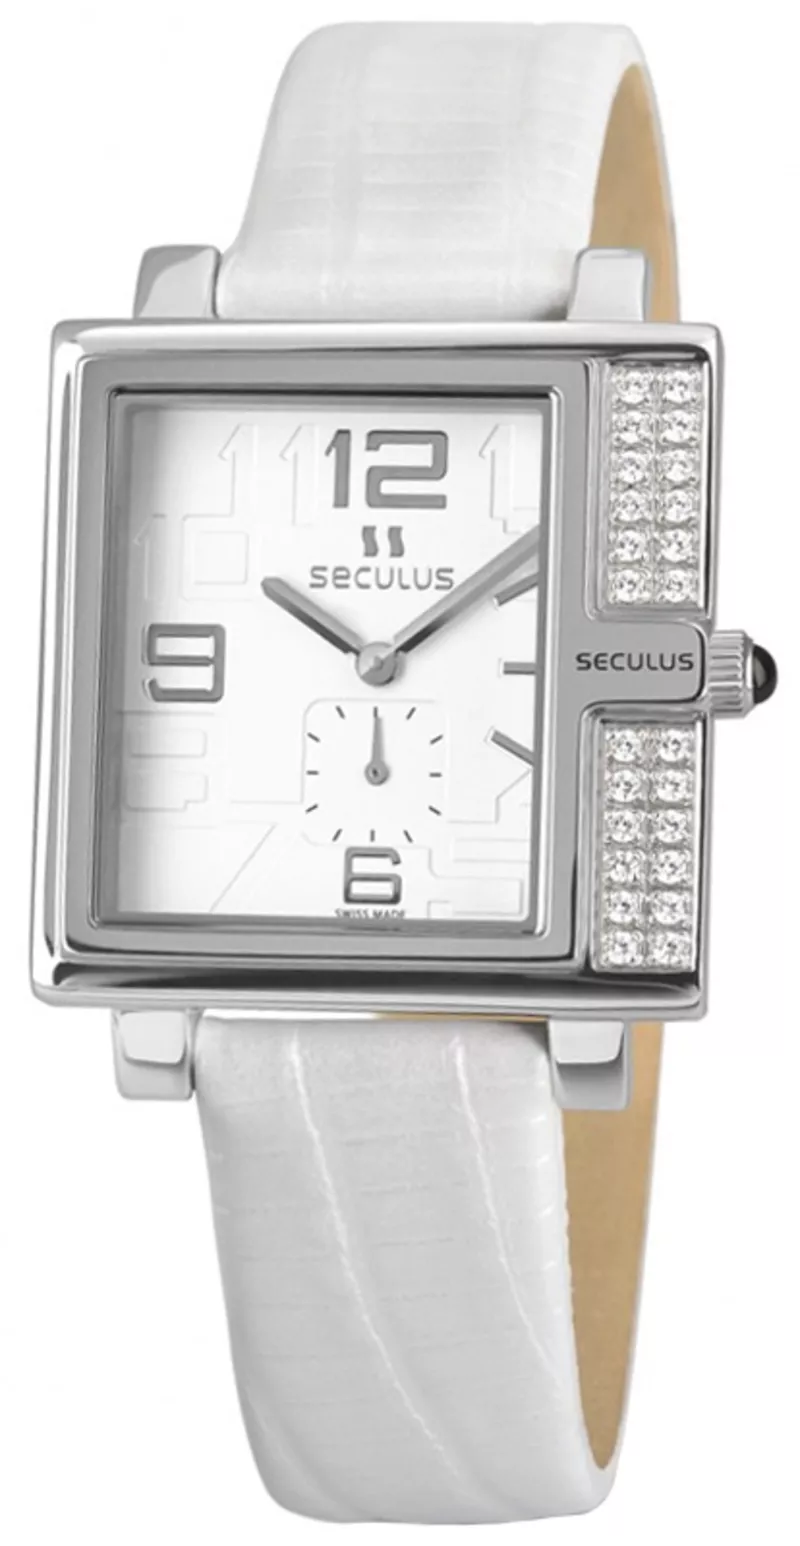 Часы Seculus 1670.2.1064 white, ss-cz, white leather